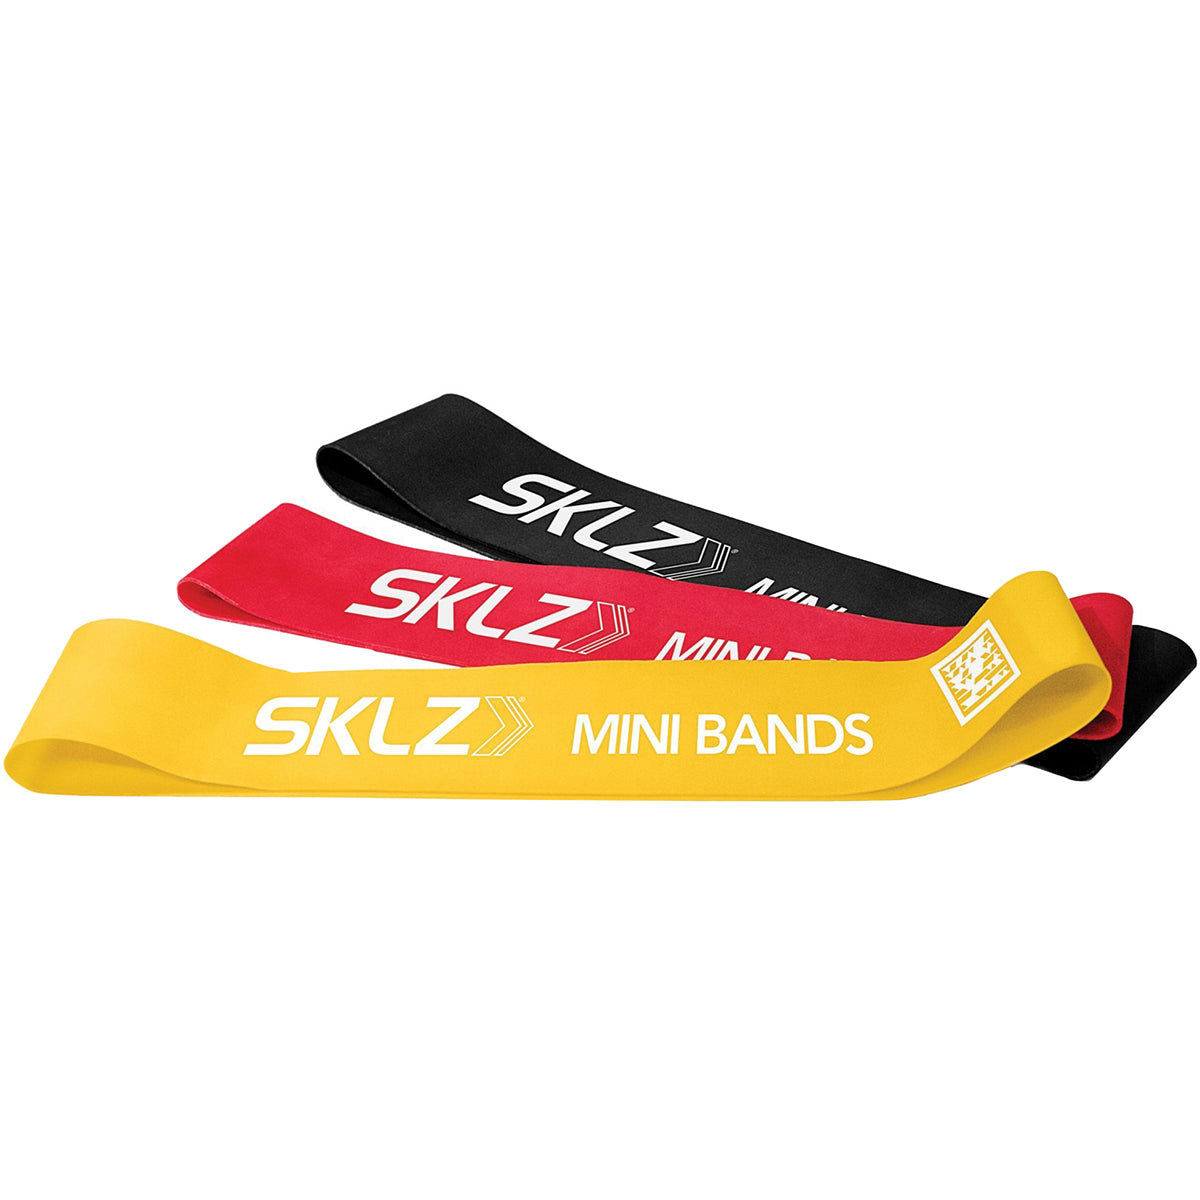 SKLZ Resistance Training Mini Bands 3-Pack - Multi-Colored SKLZ